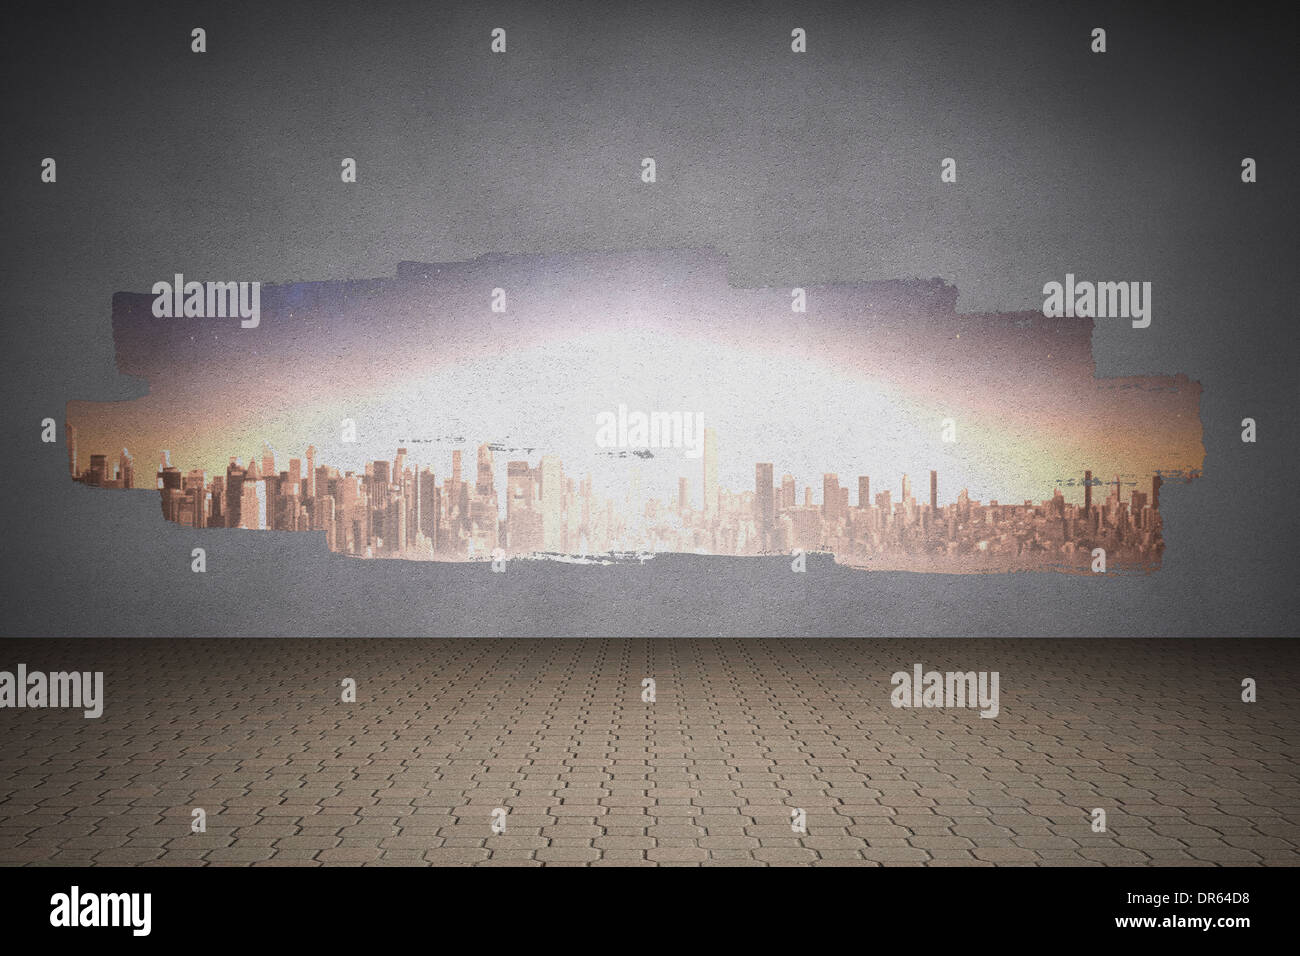 Visualización en pared mostrando ciudad brillante Foto de stock